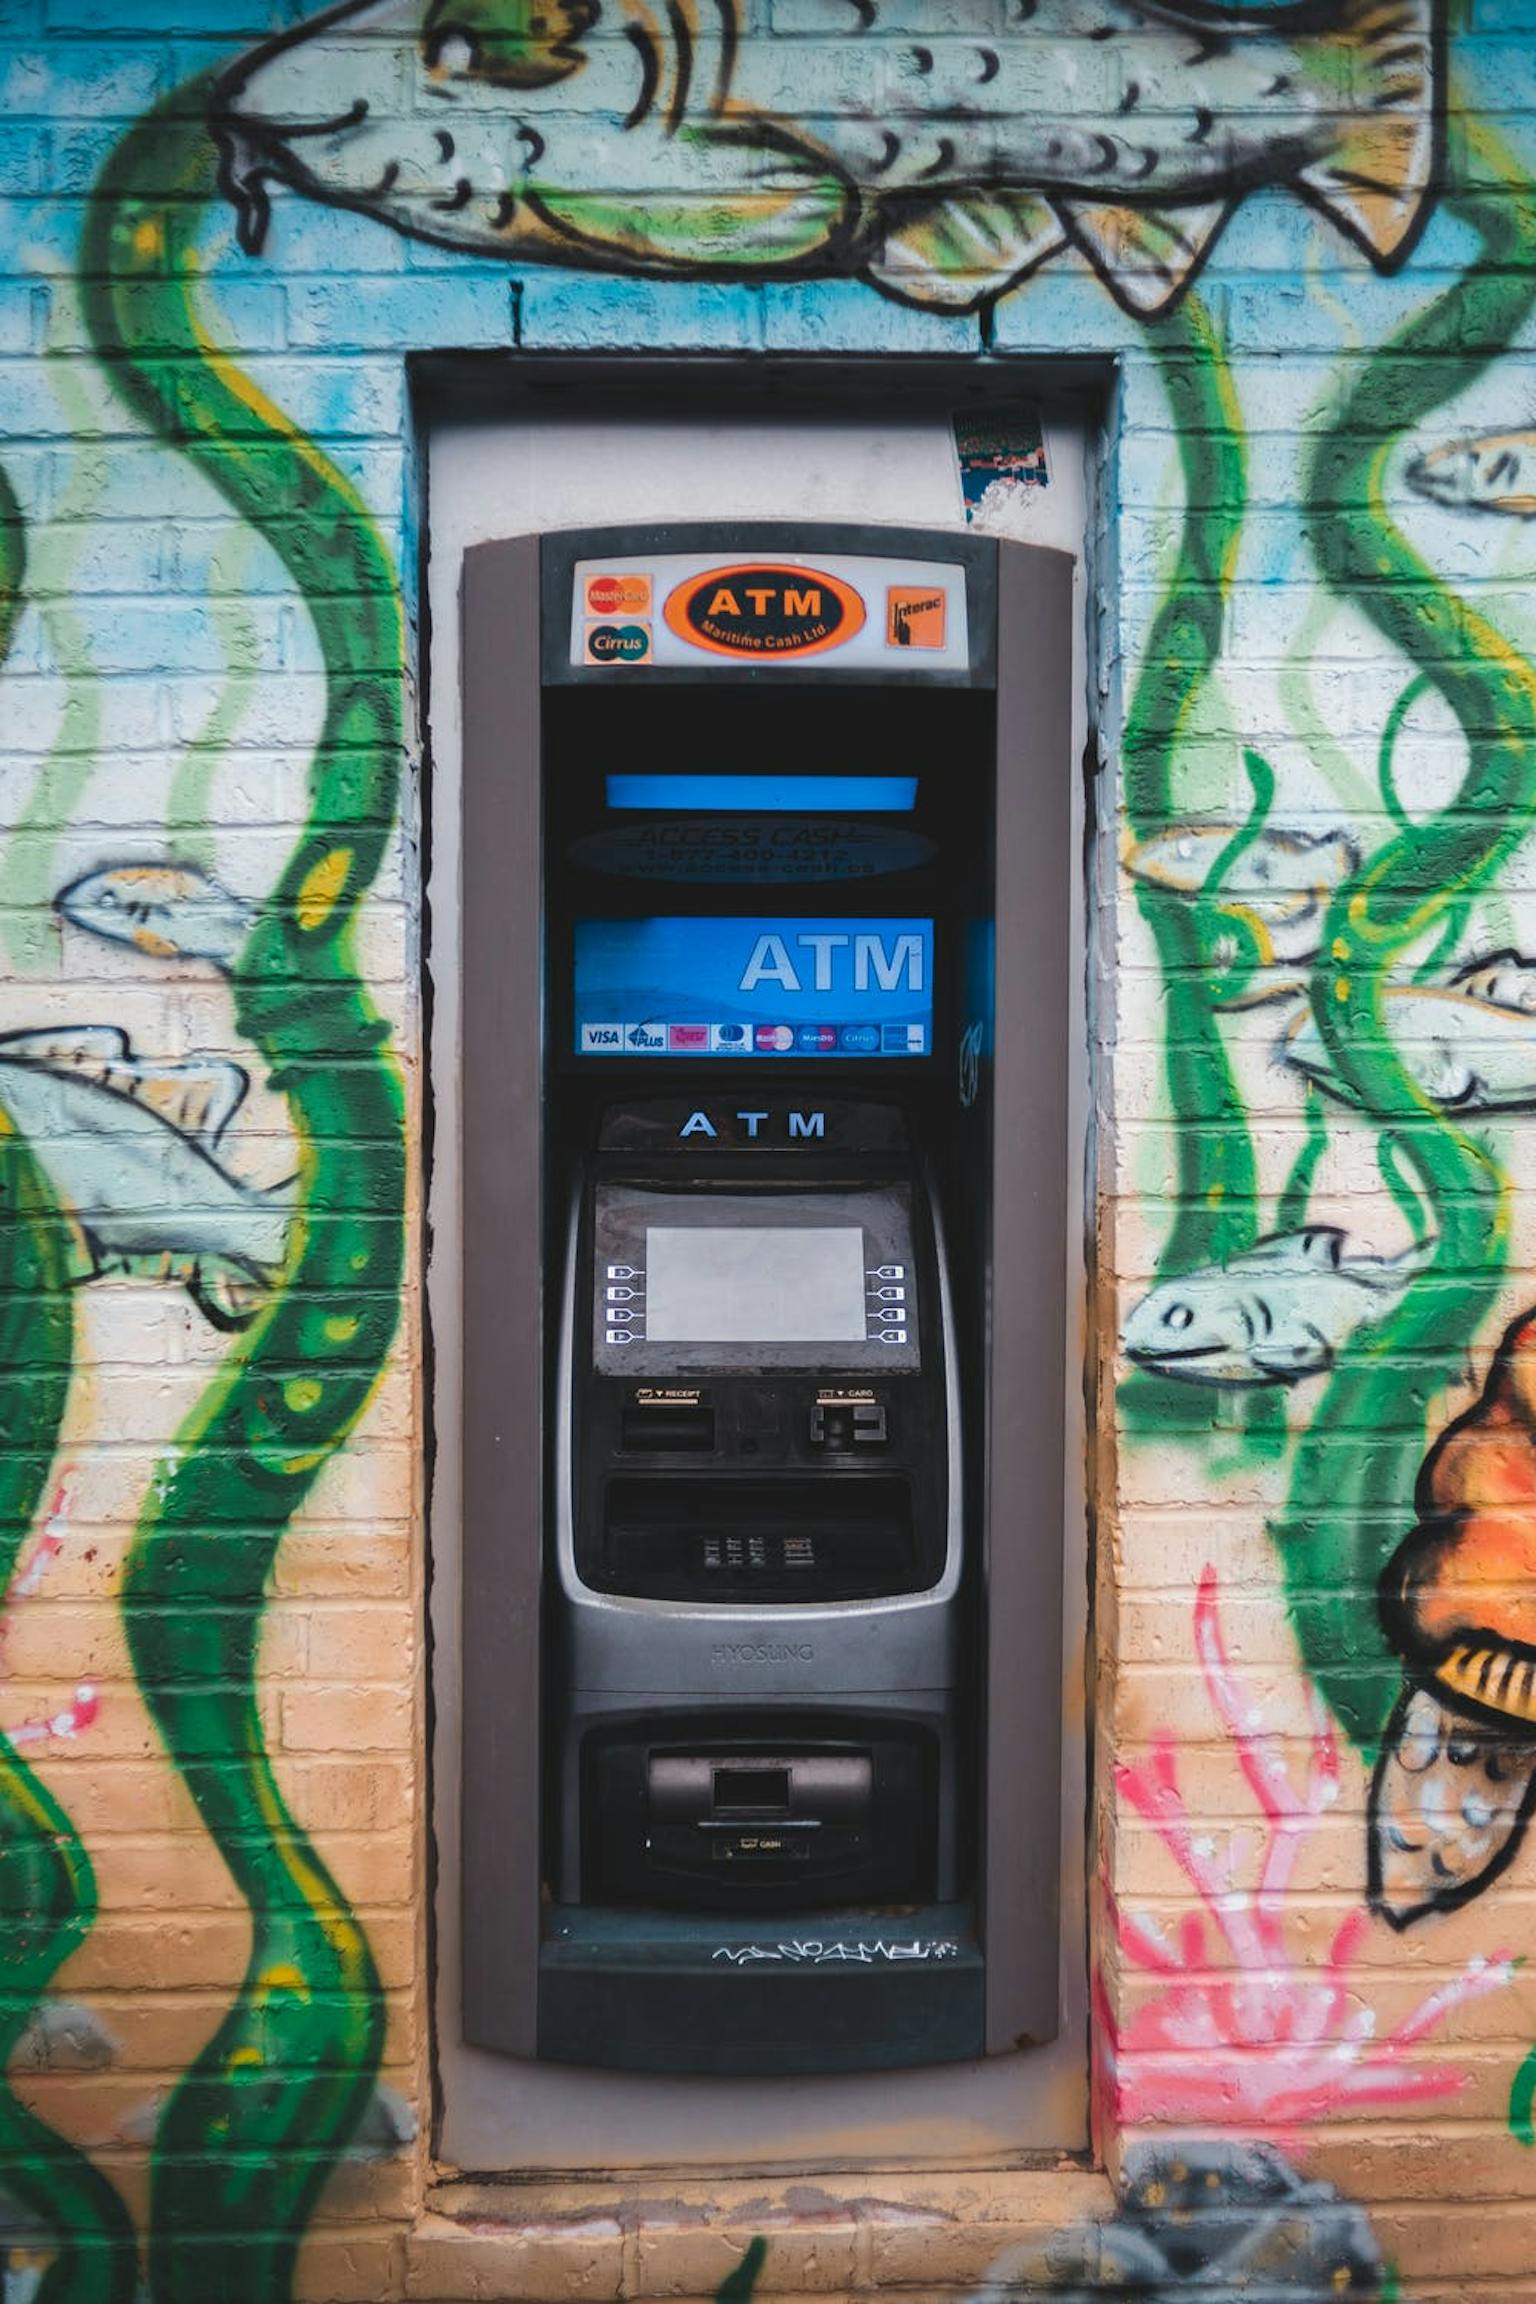 Mengganti Pin ATM BNI Bisa Dilakukan Di Mesin ATM